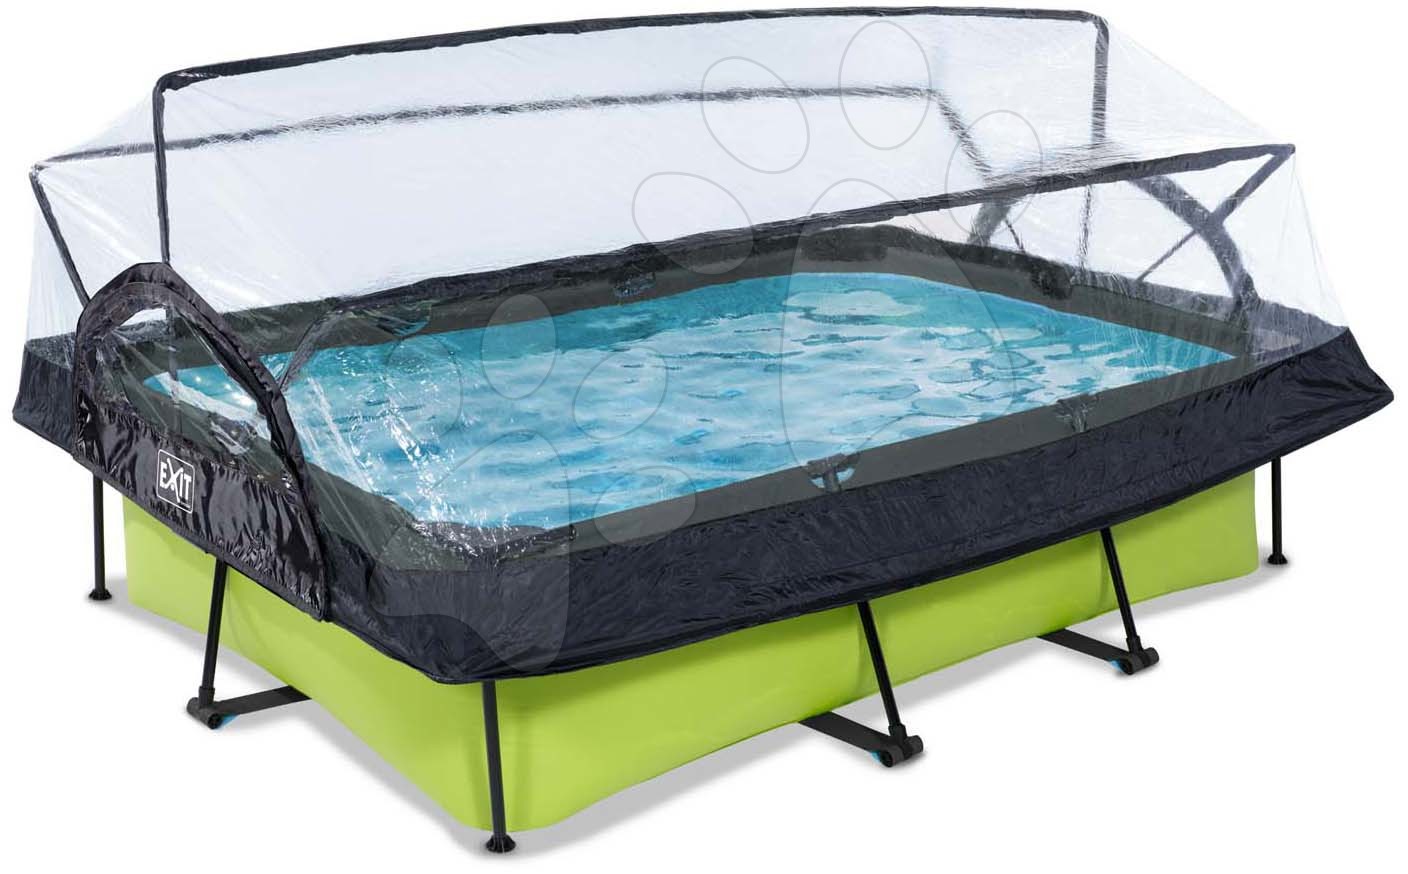 Medence búrával és szivattyúval Lime pool Exit Toys acél medencekeret 220*150 cm zöld 6 évtől